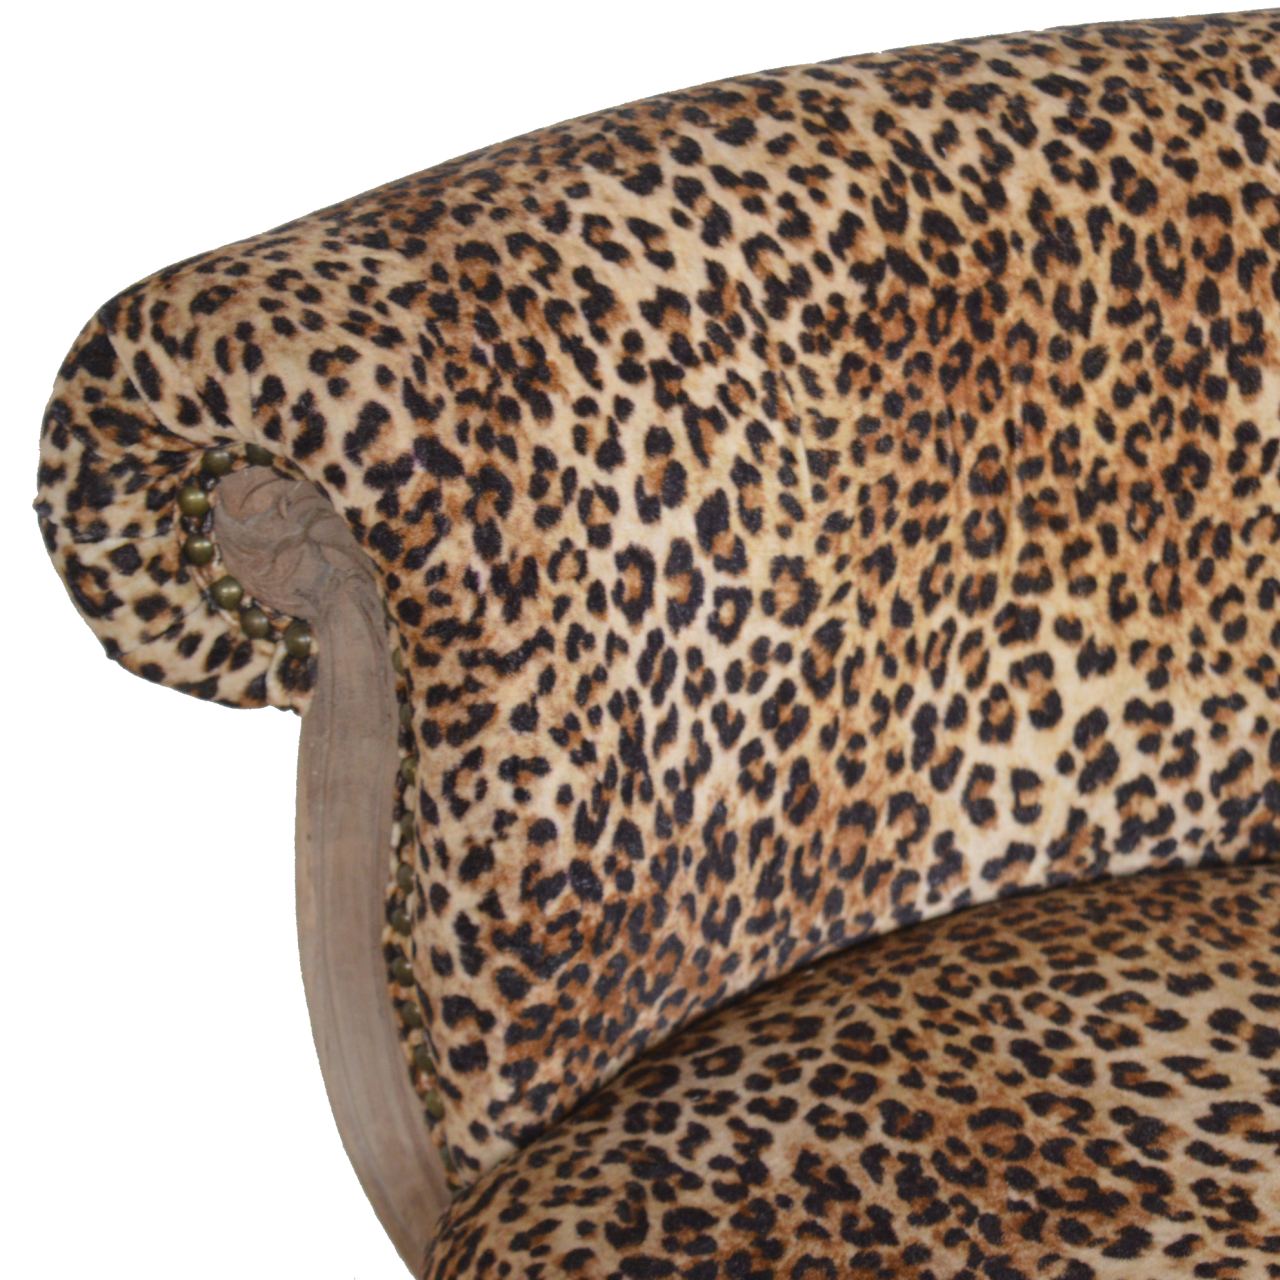 Stuhl mit Leopardenmuster und Nieten